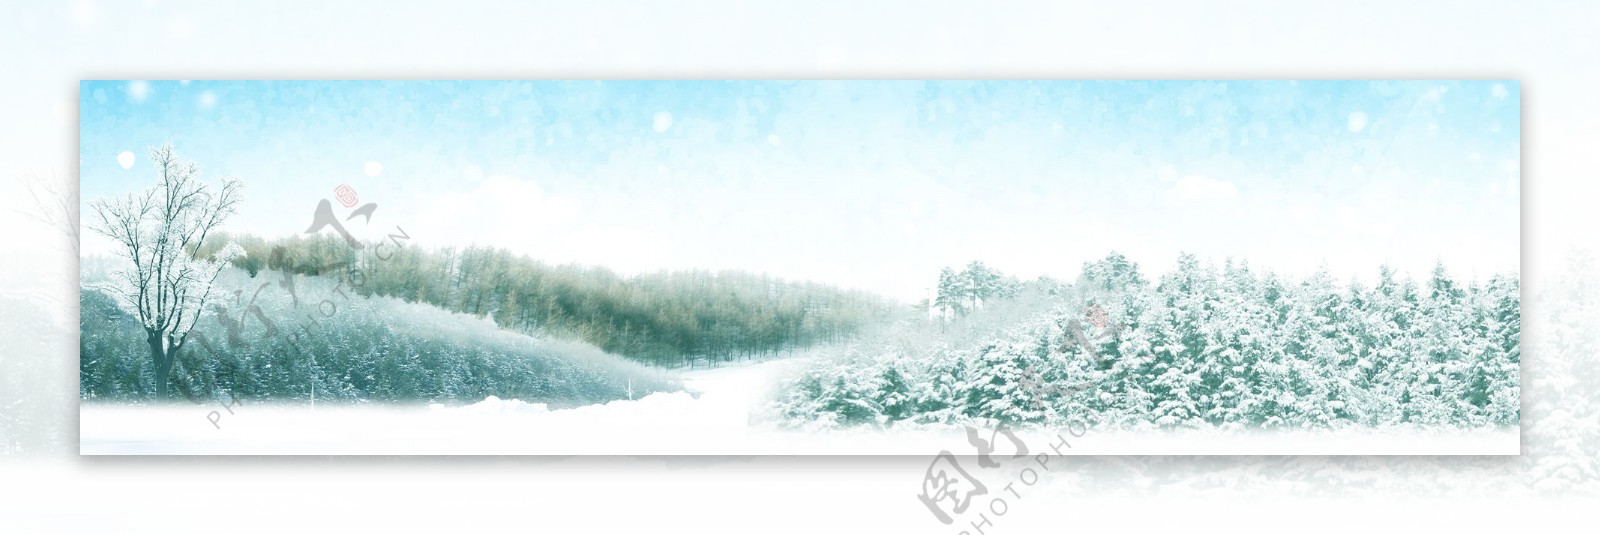 1920雪中景色背景素材134